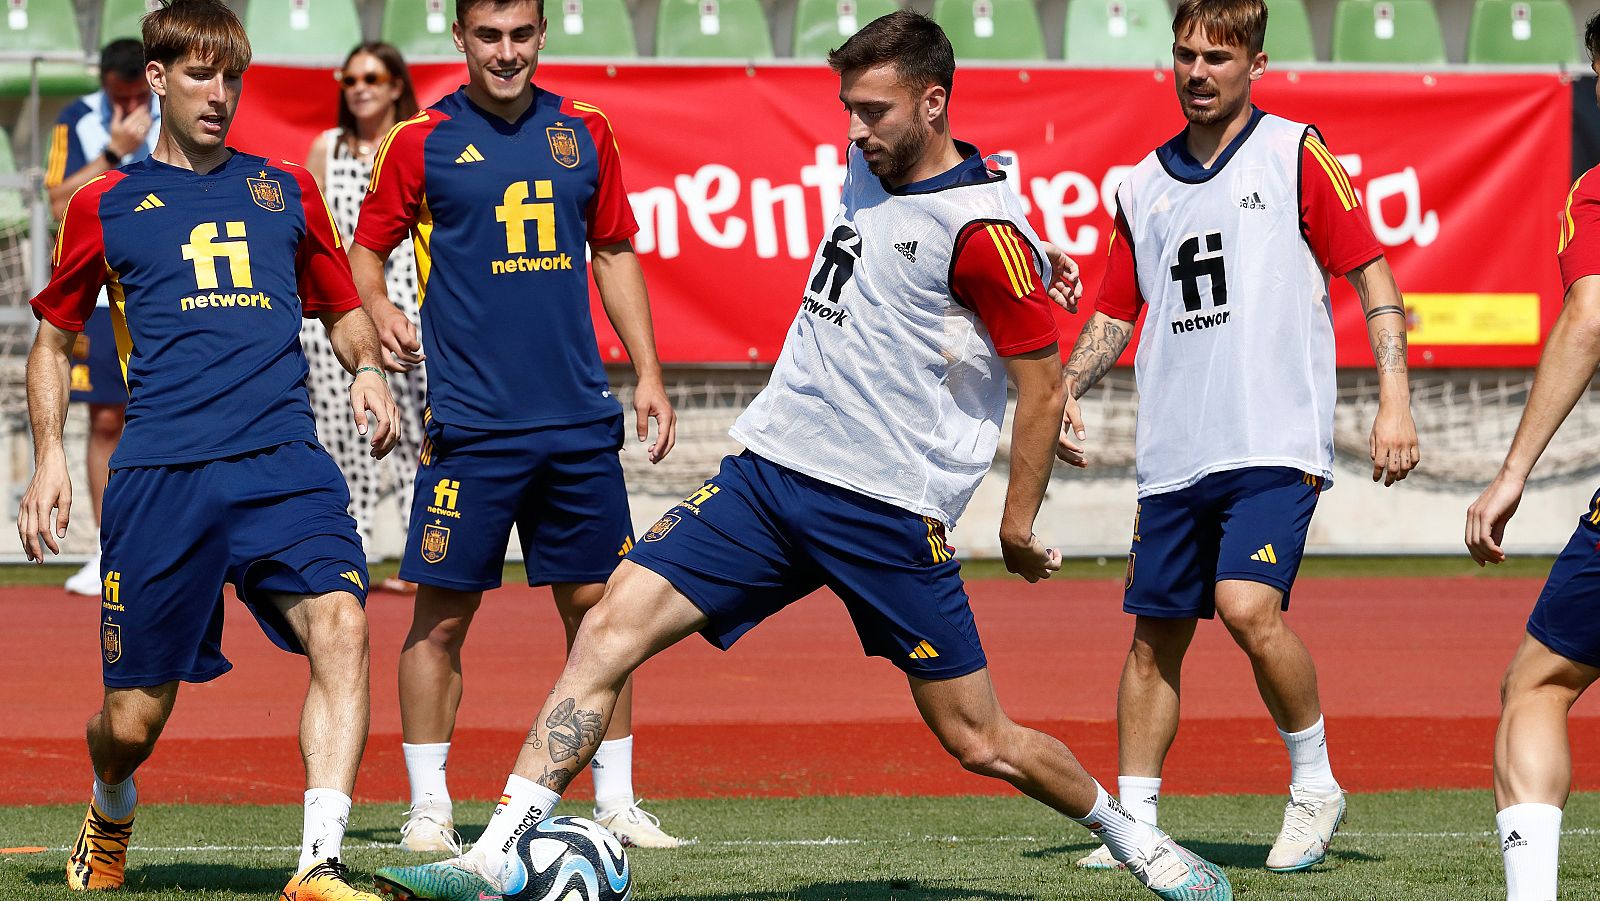 La selección española se estrena en el europeo sub-21 ante Rumanía - ver ahora